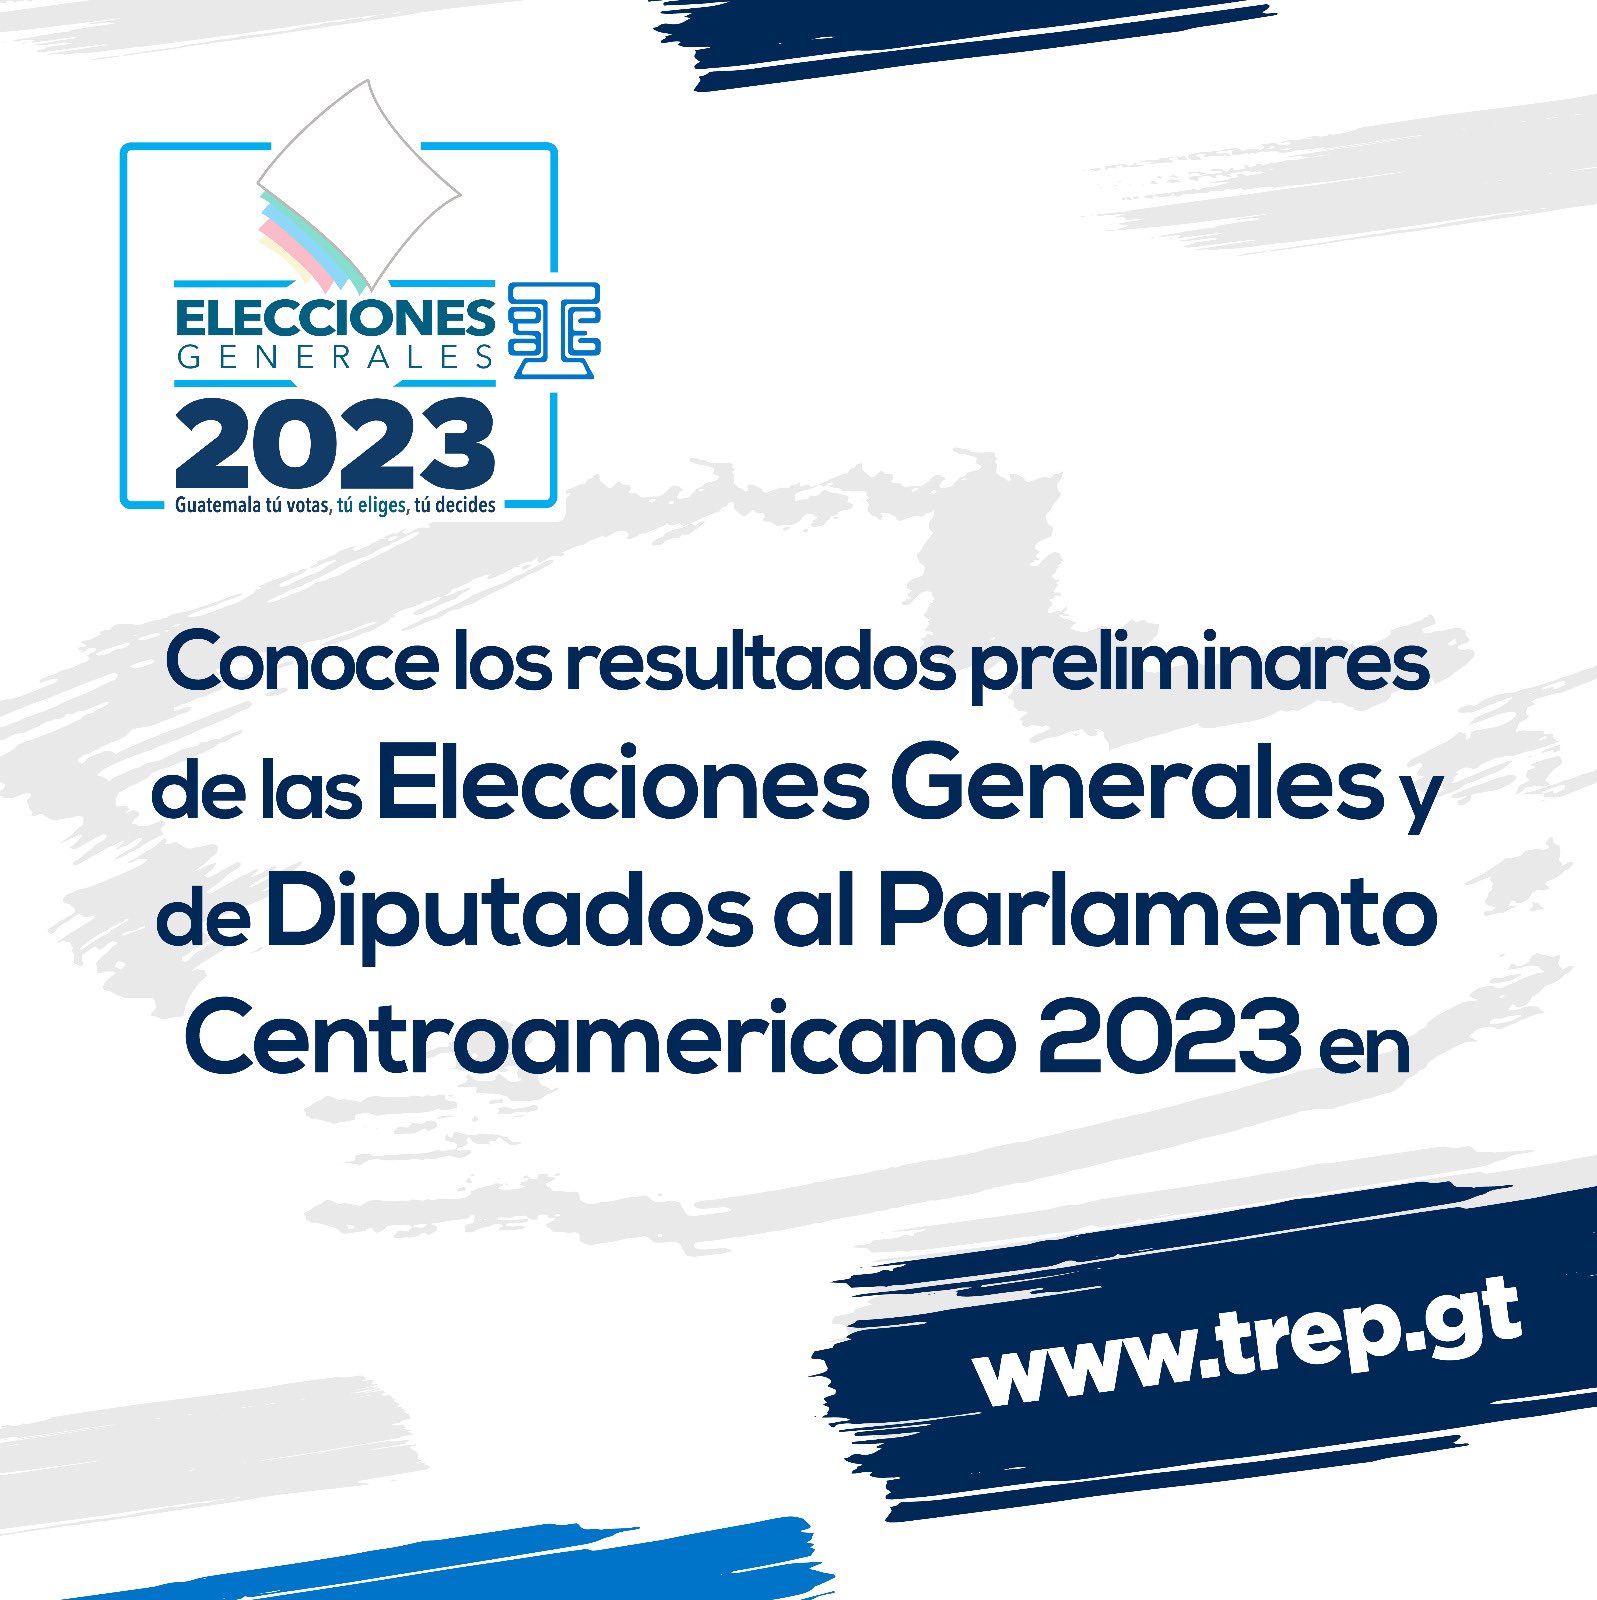 TSE Guatemala on Twitter "Conoce los resultados preliminares de las